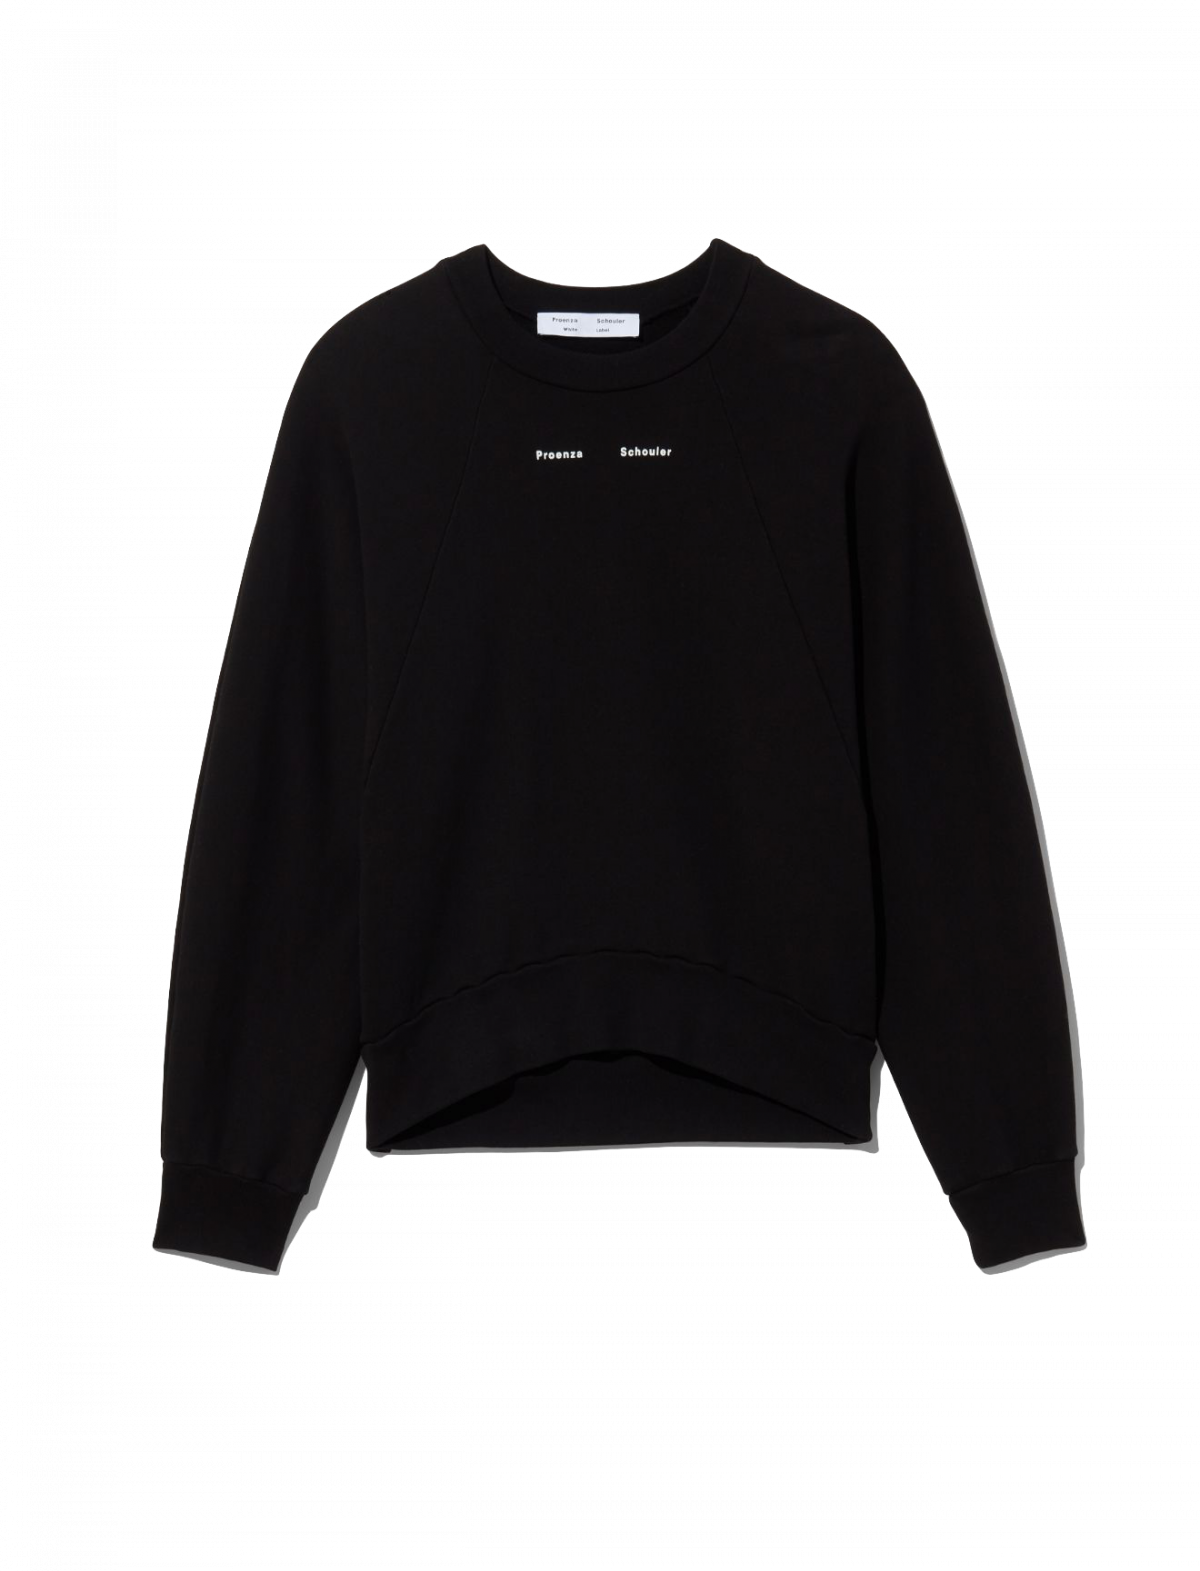 Proenza Schouler Logo Sweatshirt - Black - Proenza Schouler - Buhl Fashion